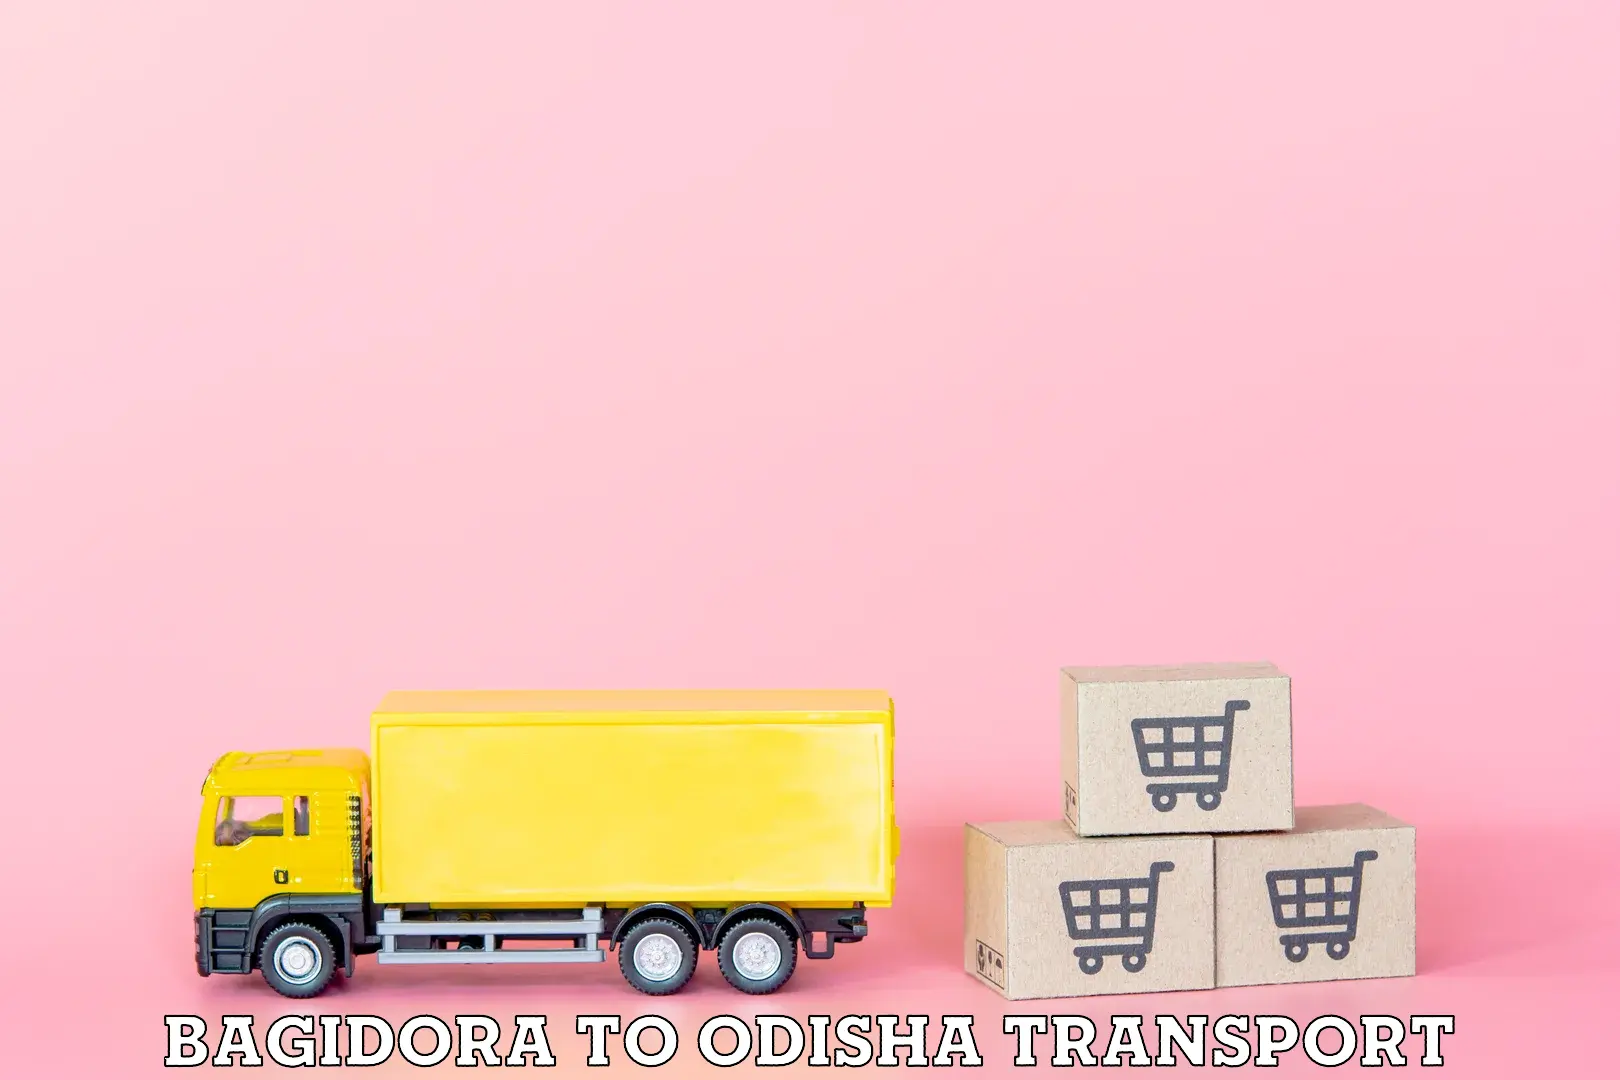 India truck logistics services Bagidora to Kishorenagar